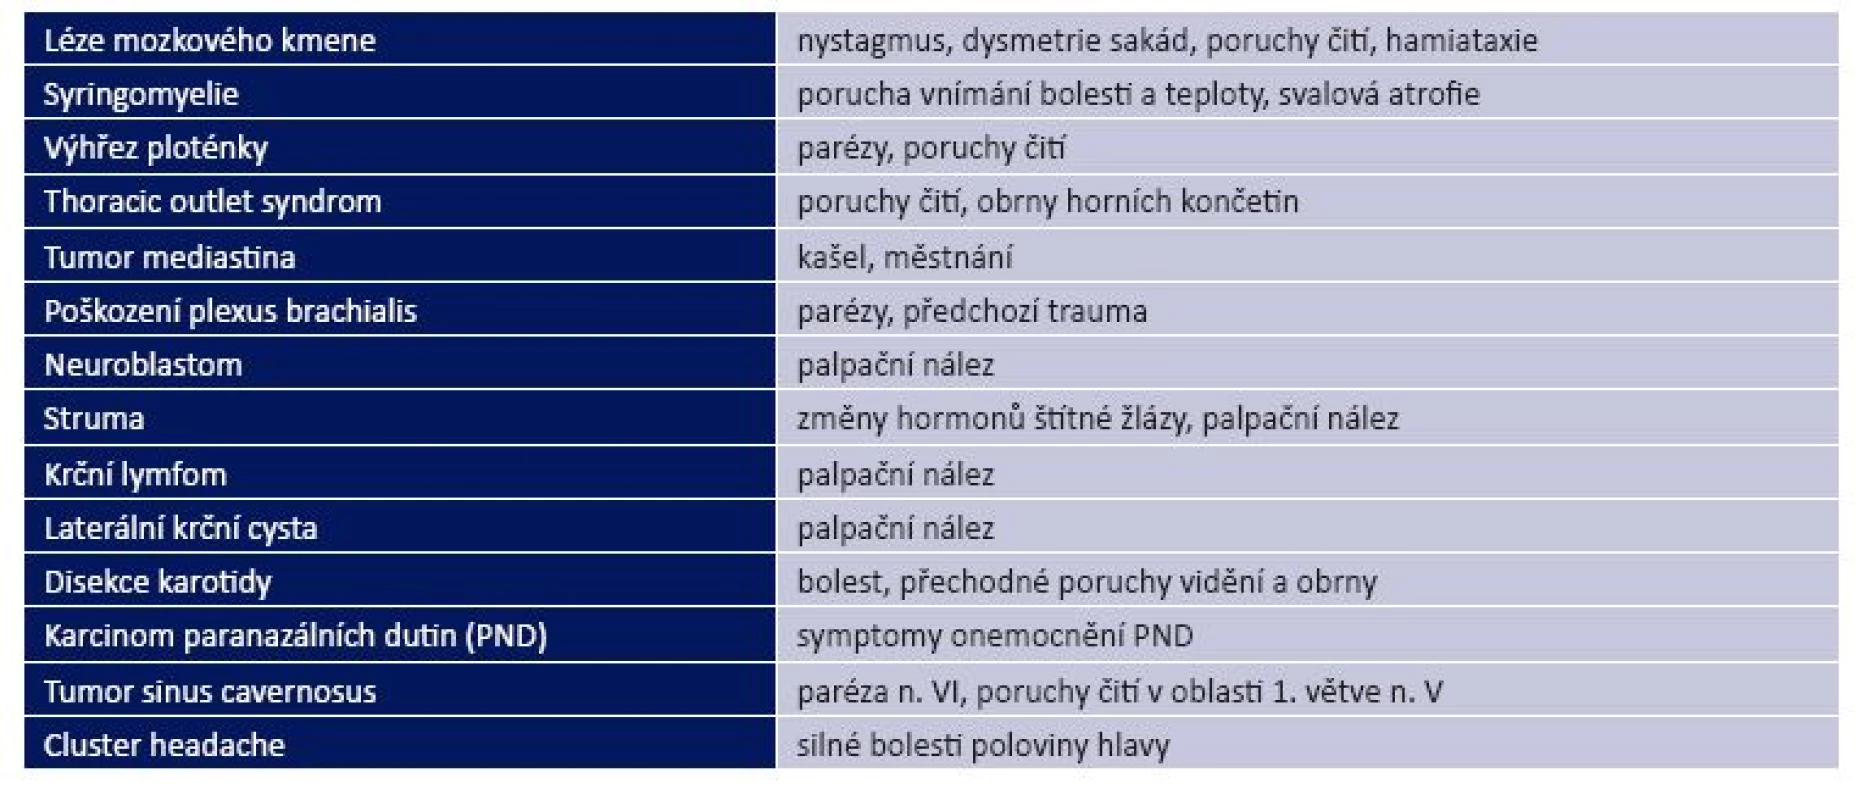 Příčiny Hornerova syndromu a příslušné doprovodné příznaky a nálezy